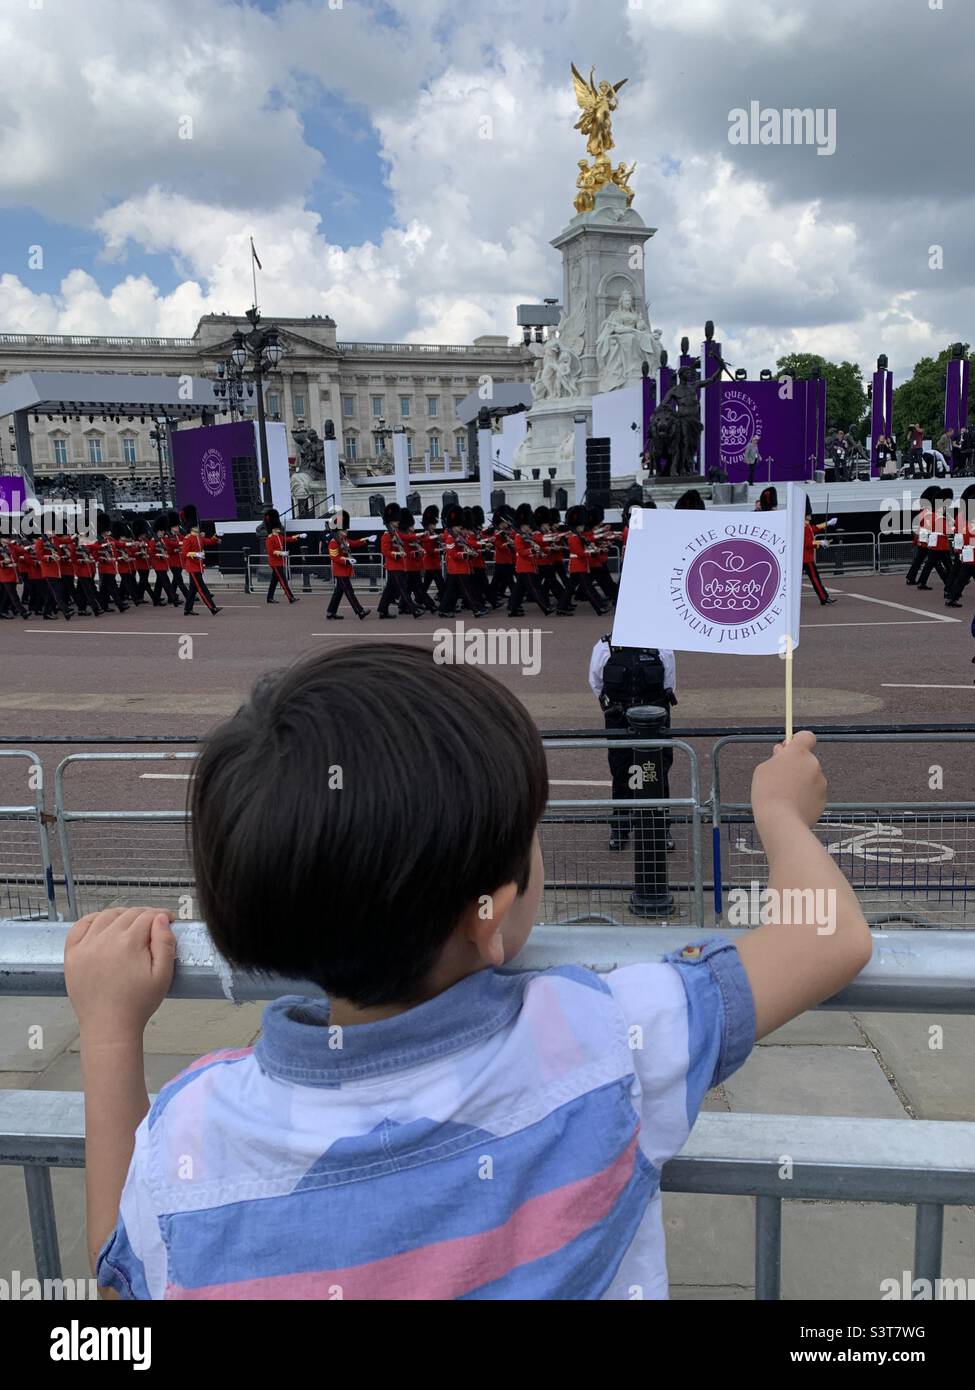 Drapeau de l'enfant au queens Platinum jubilé Buckingham Palace londres Banque D'Images